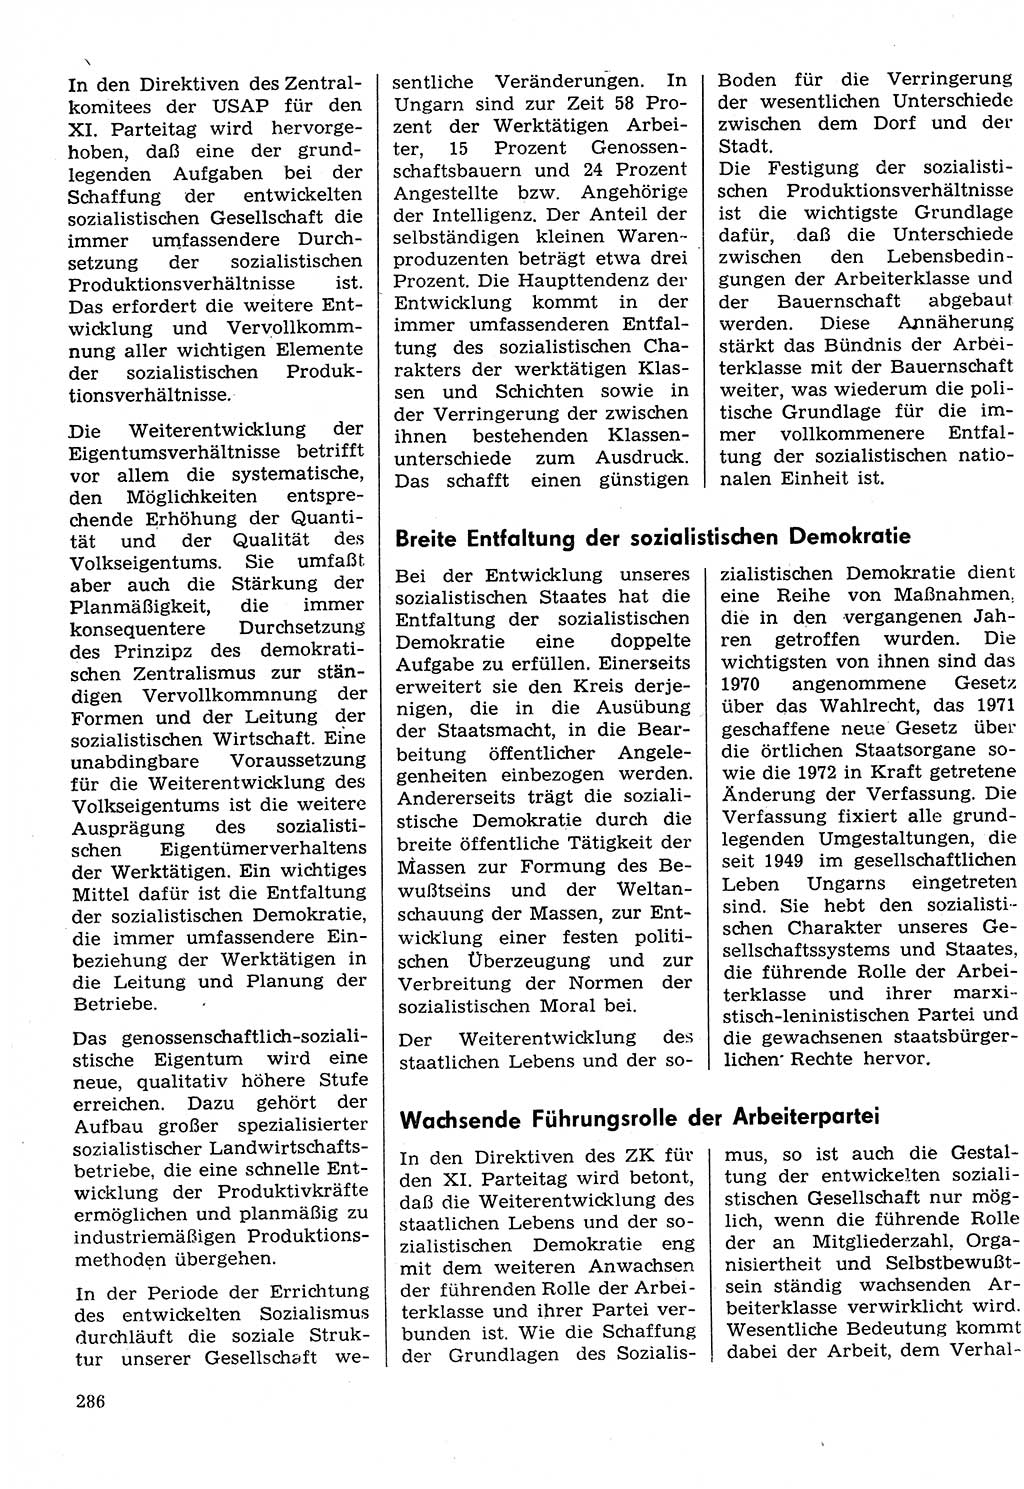 Neuer Weg (NW), Organ des Zentralkomitees (ZK) der SED (Sozialistische Einheitspartei Deutschlands) für Fragen des Parteilebens, 30. Jahrgang [Deutsche Demokratische Republik (DDR)] 1975, Seite 286 (NW ZK SED DDR 1975, S. 286)